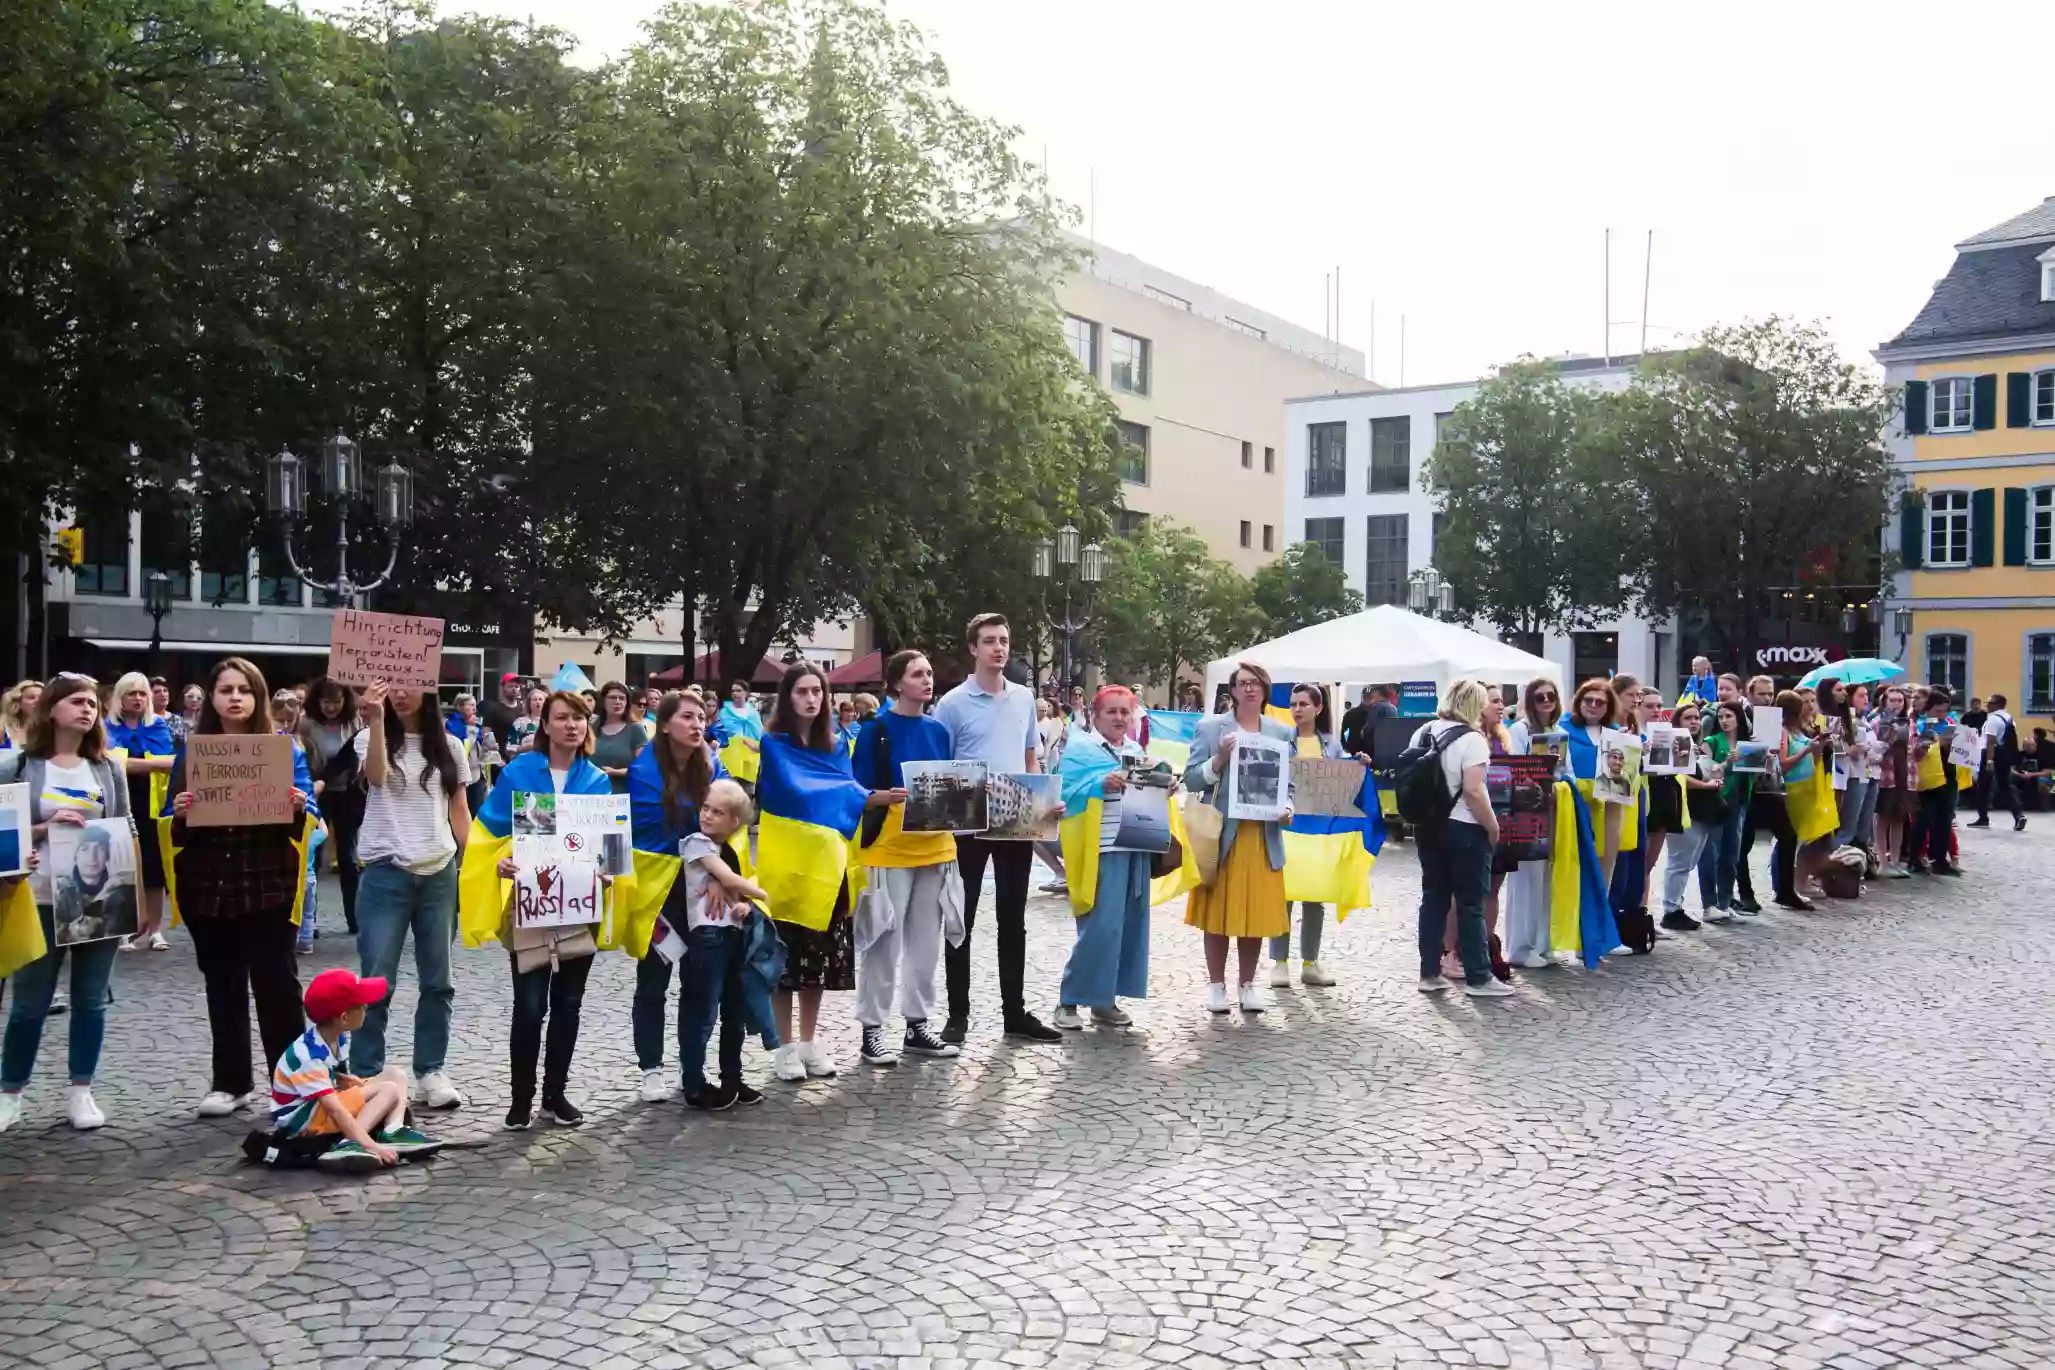 Майже чверть українців за кордоном стикалась із фейками про Україну. Кожен шостий — в українських ресурсах